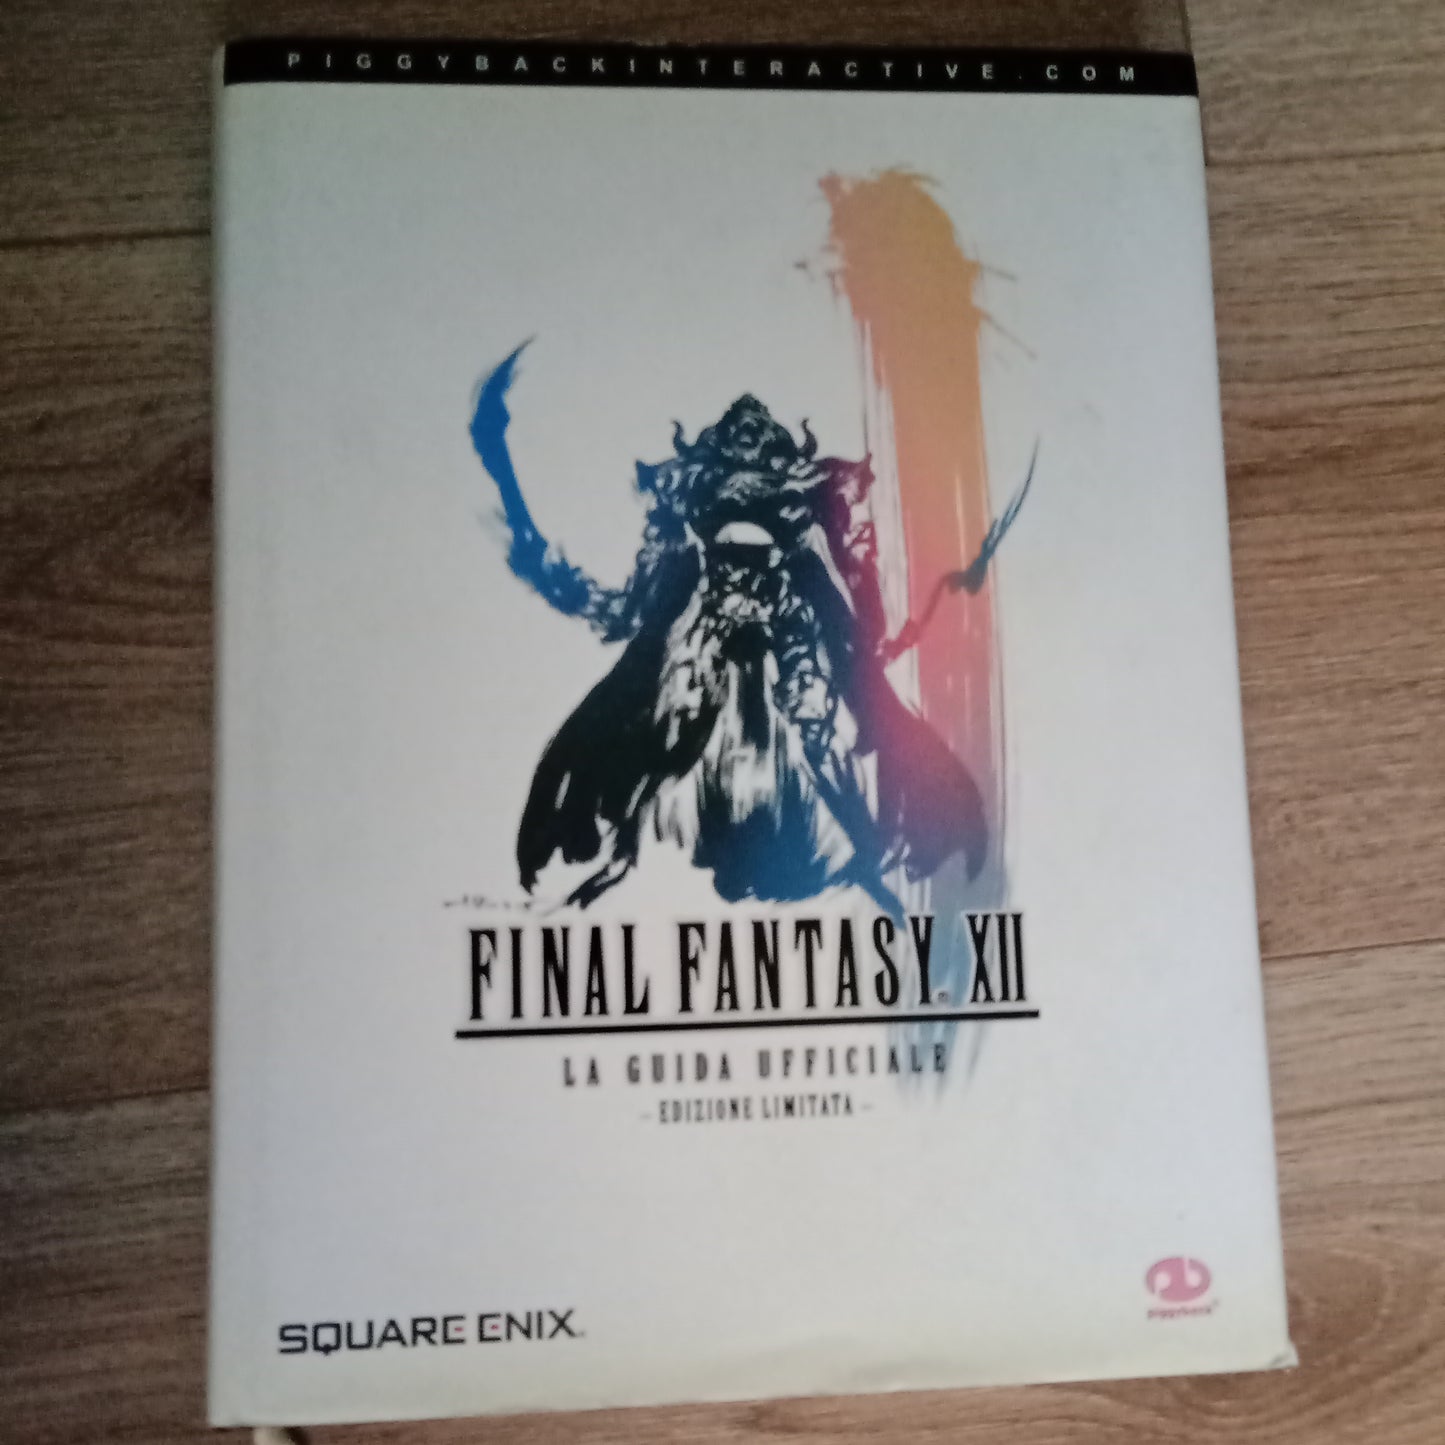 Final Fantasy XII Edizione Limitata